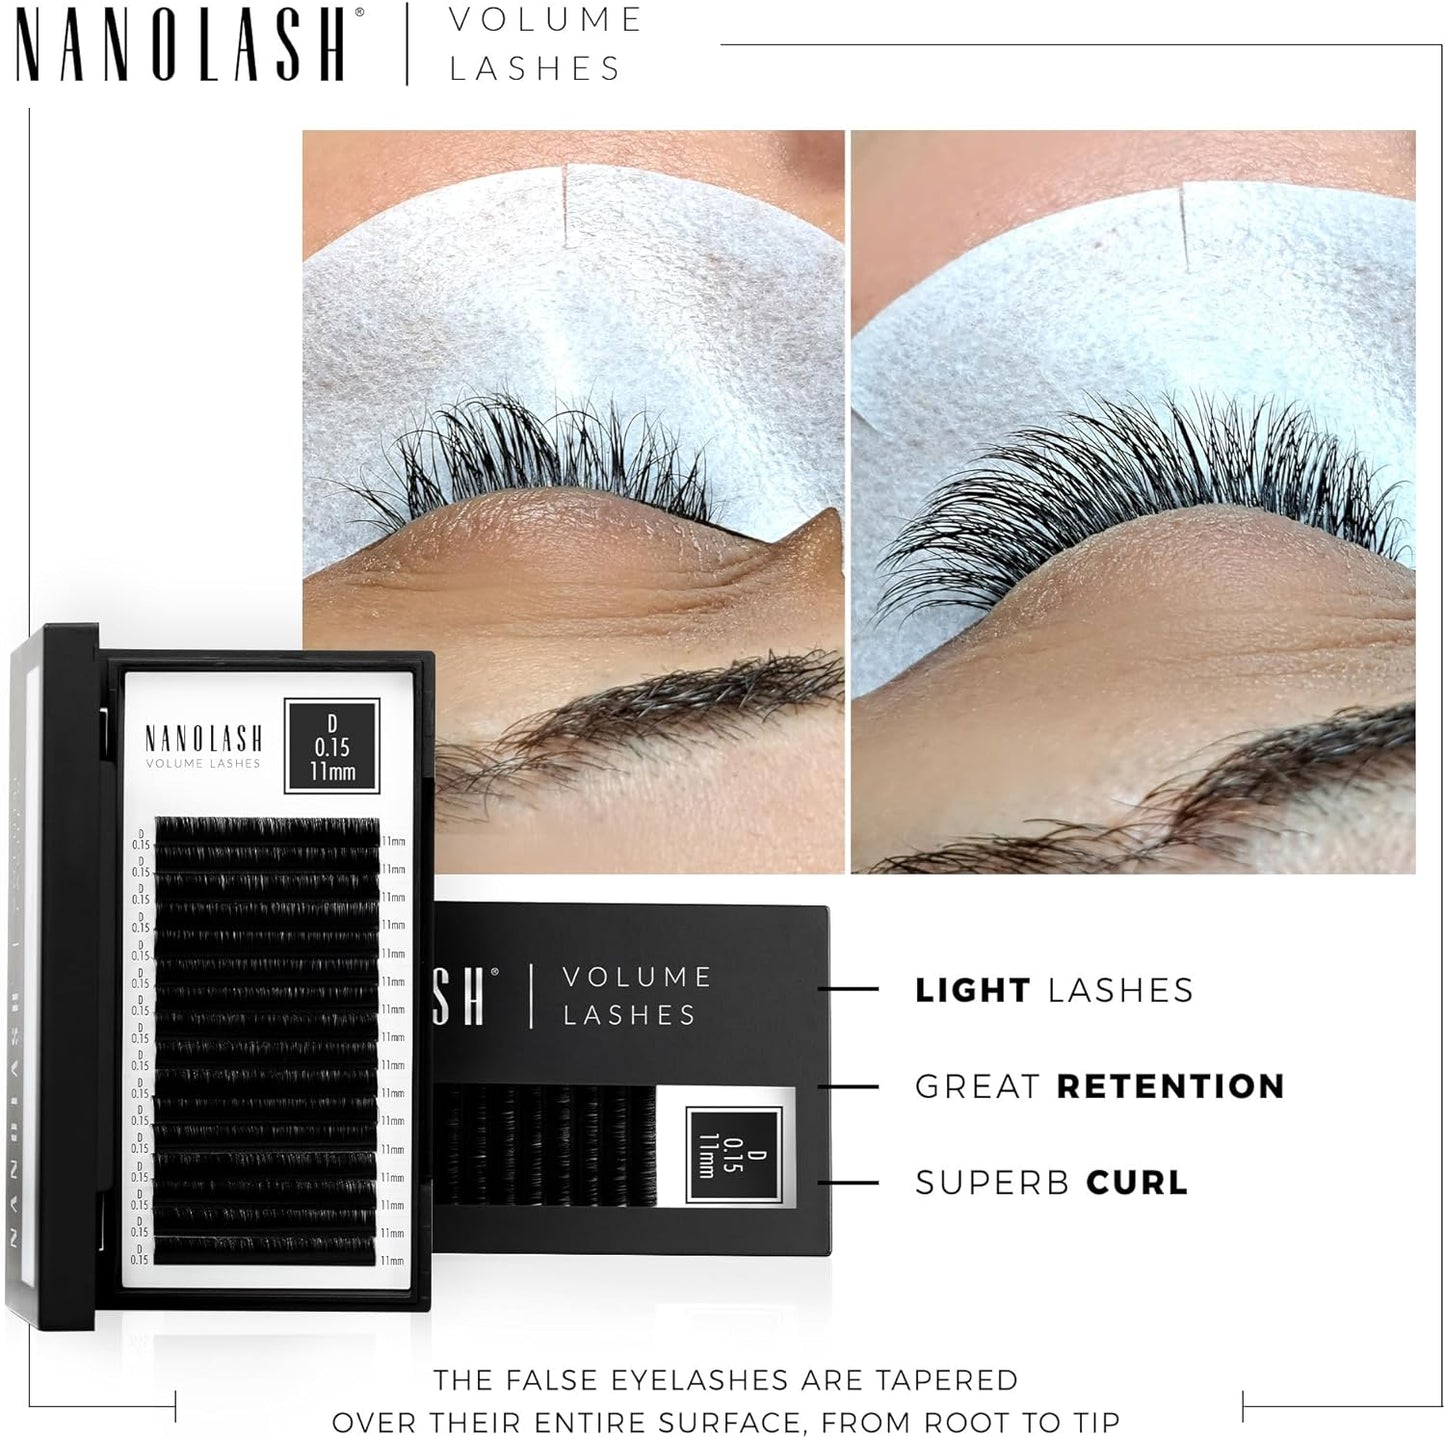 Nanolash Volume Lashes - false lashes for professional eyelash extensions, volume eyelash extensions (0.07 D, 11mm)